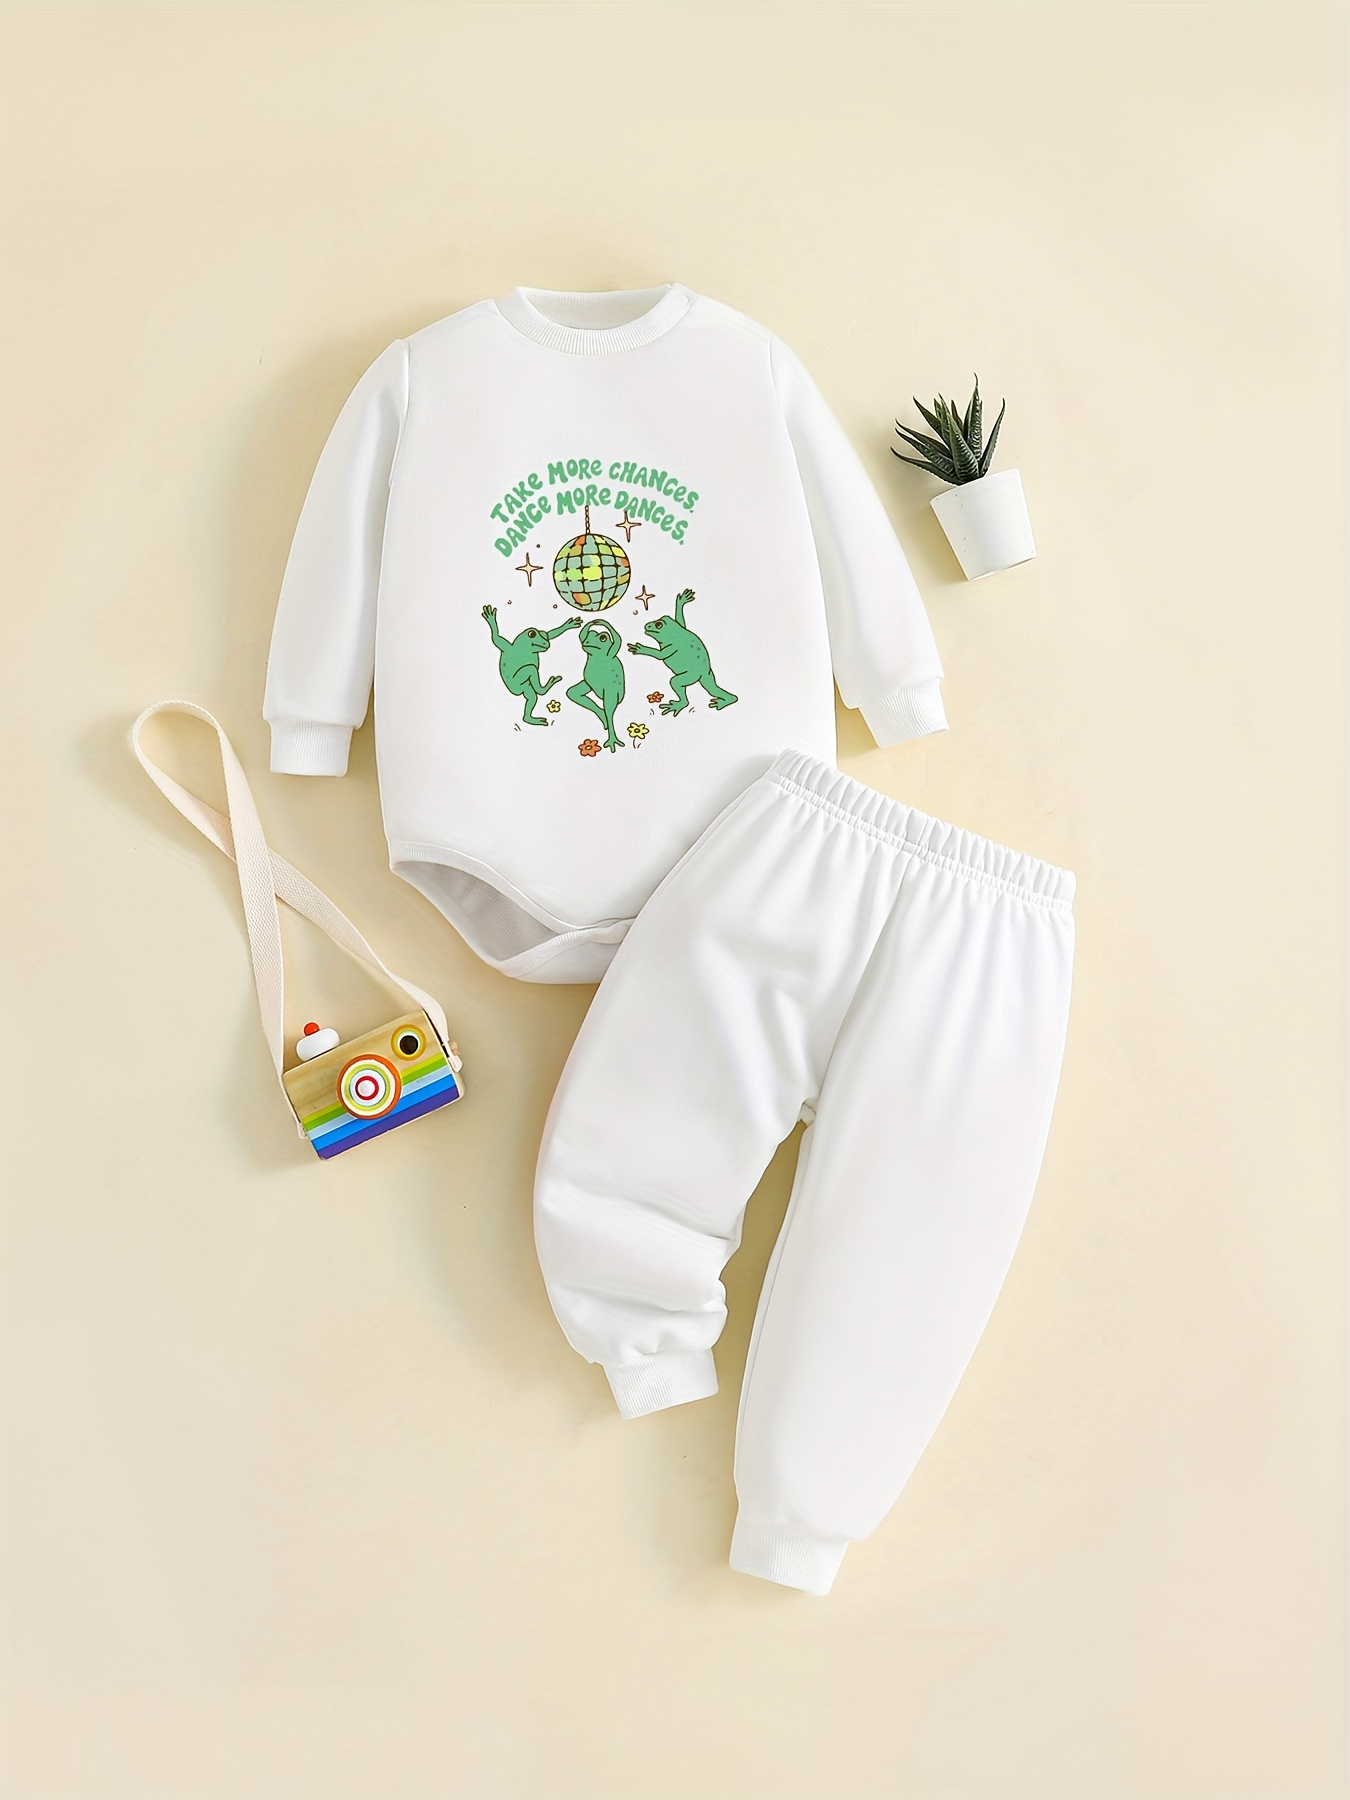 Moda crianças conjunto de roupas da criança do bebê menino carta